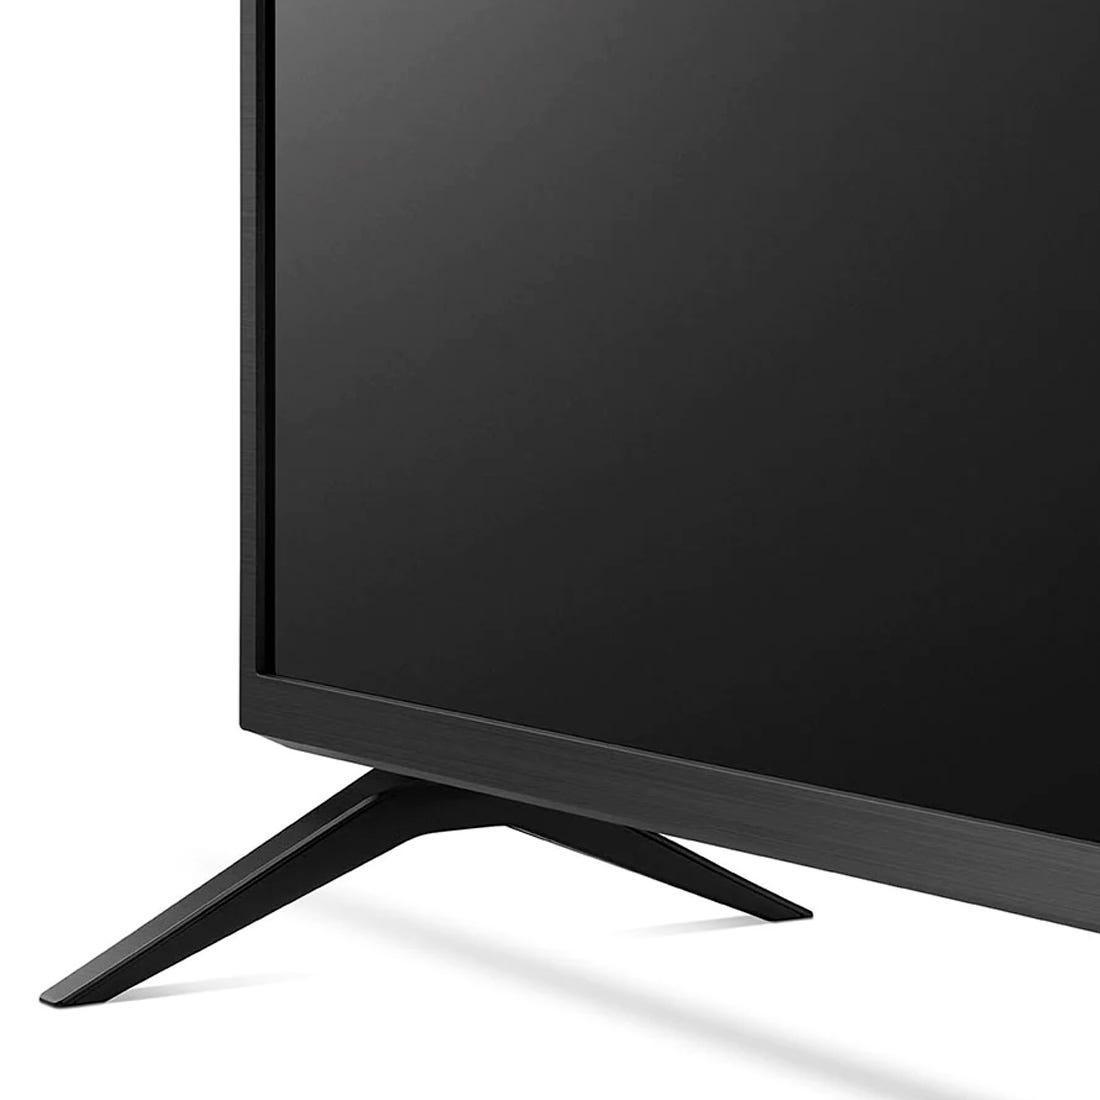 TV LG 55" LED 4K UHD SMART PRO 55UN731C - Mega Market